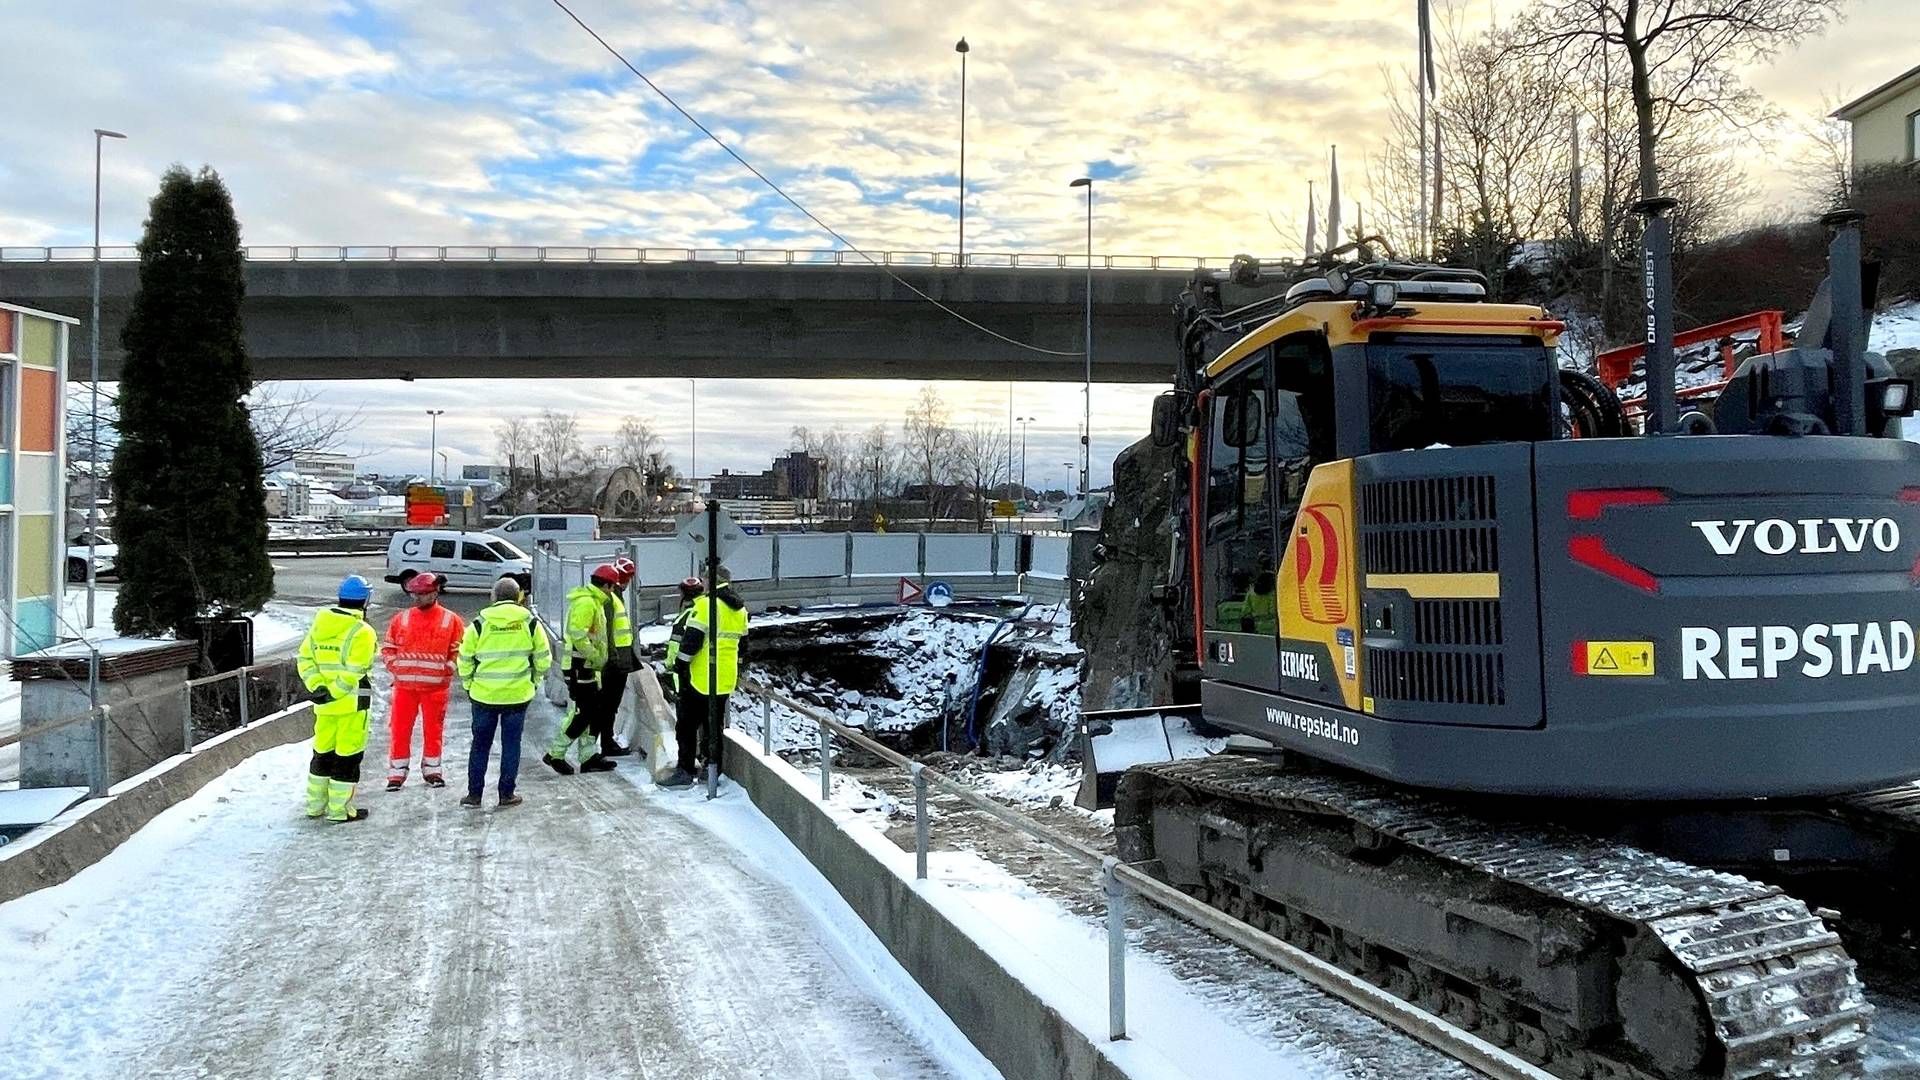 NY VEI: Statens vegvesen setter at 3-4 uker for å bygge en midlertidig vei som skal brukes i to timer. | Foto: Samir Kolukcija/Statens vegvesen